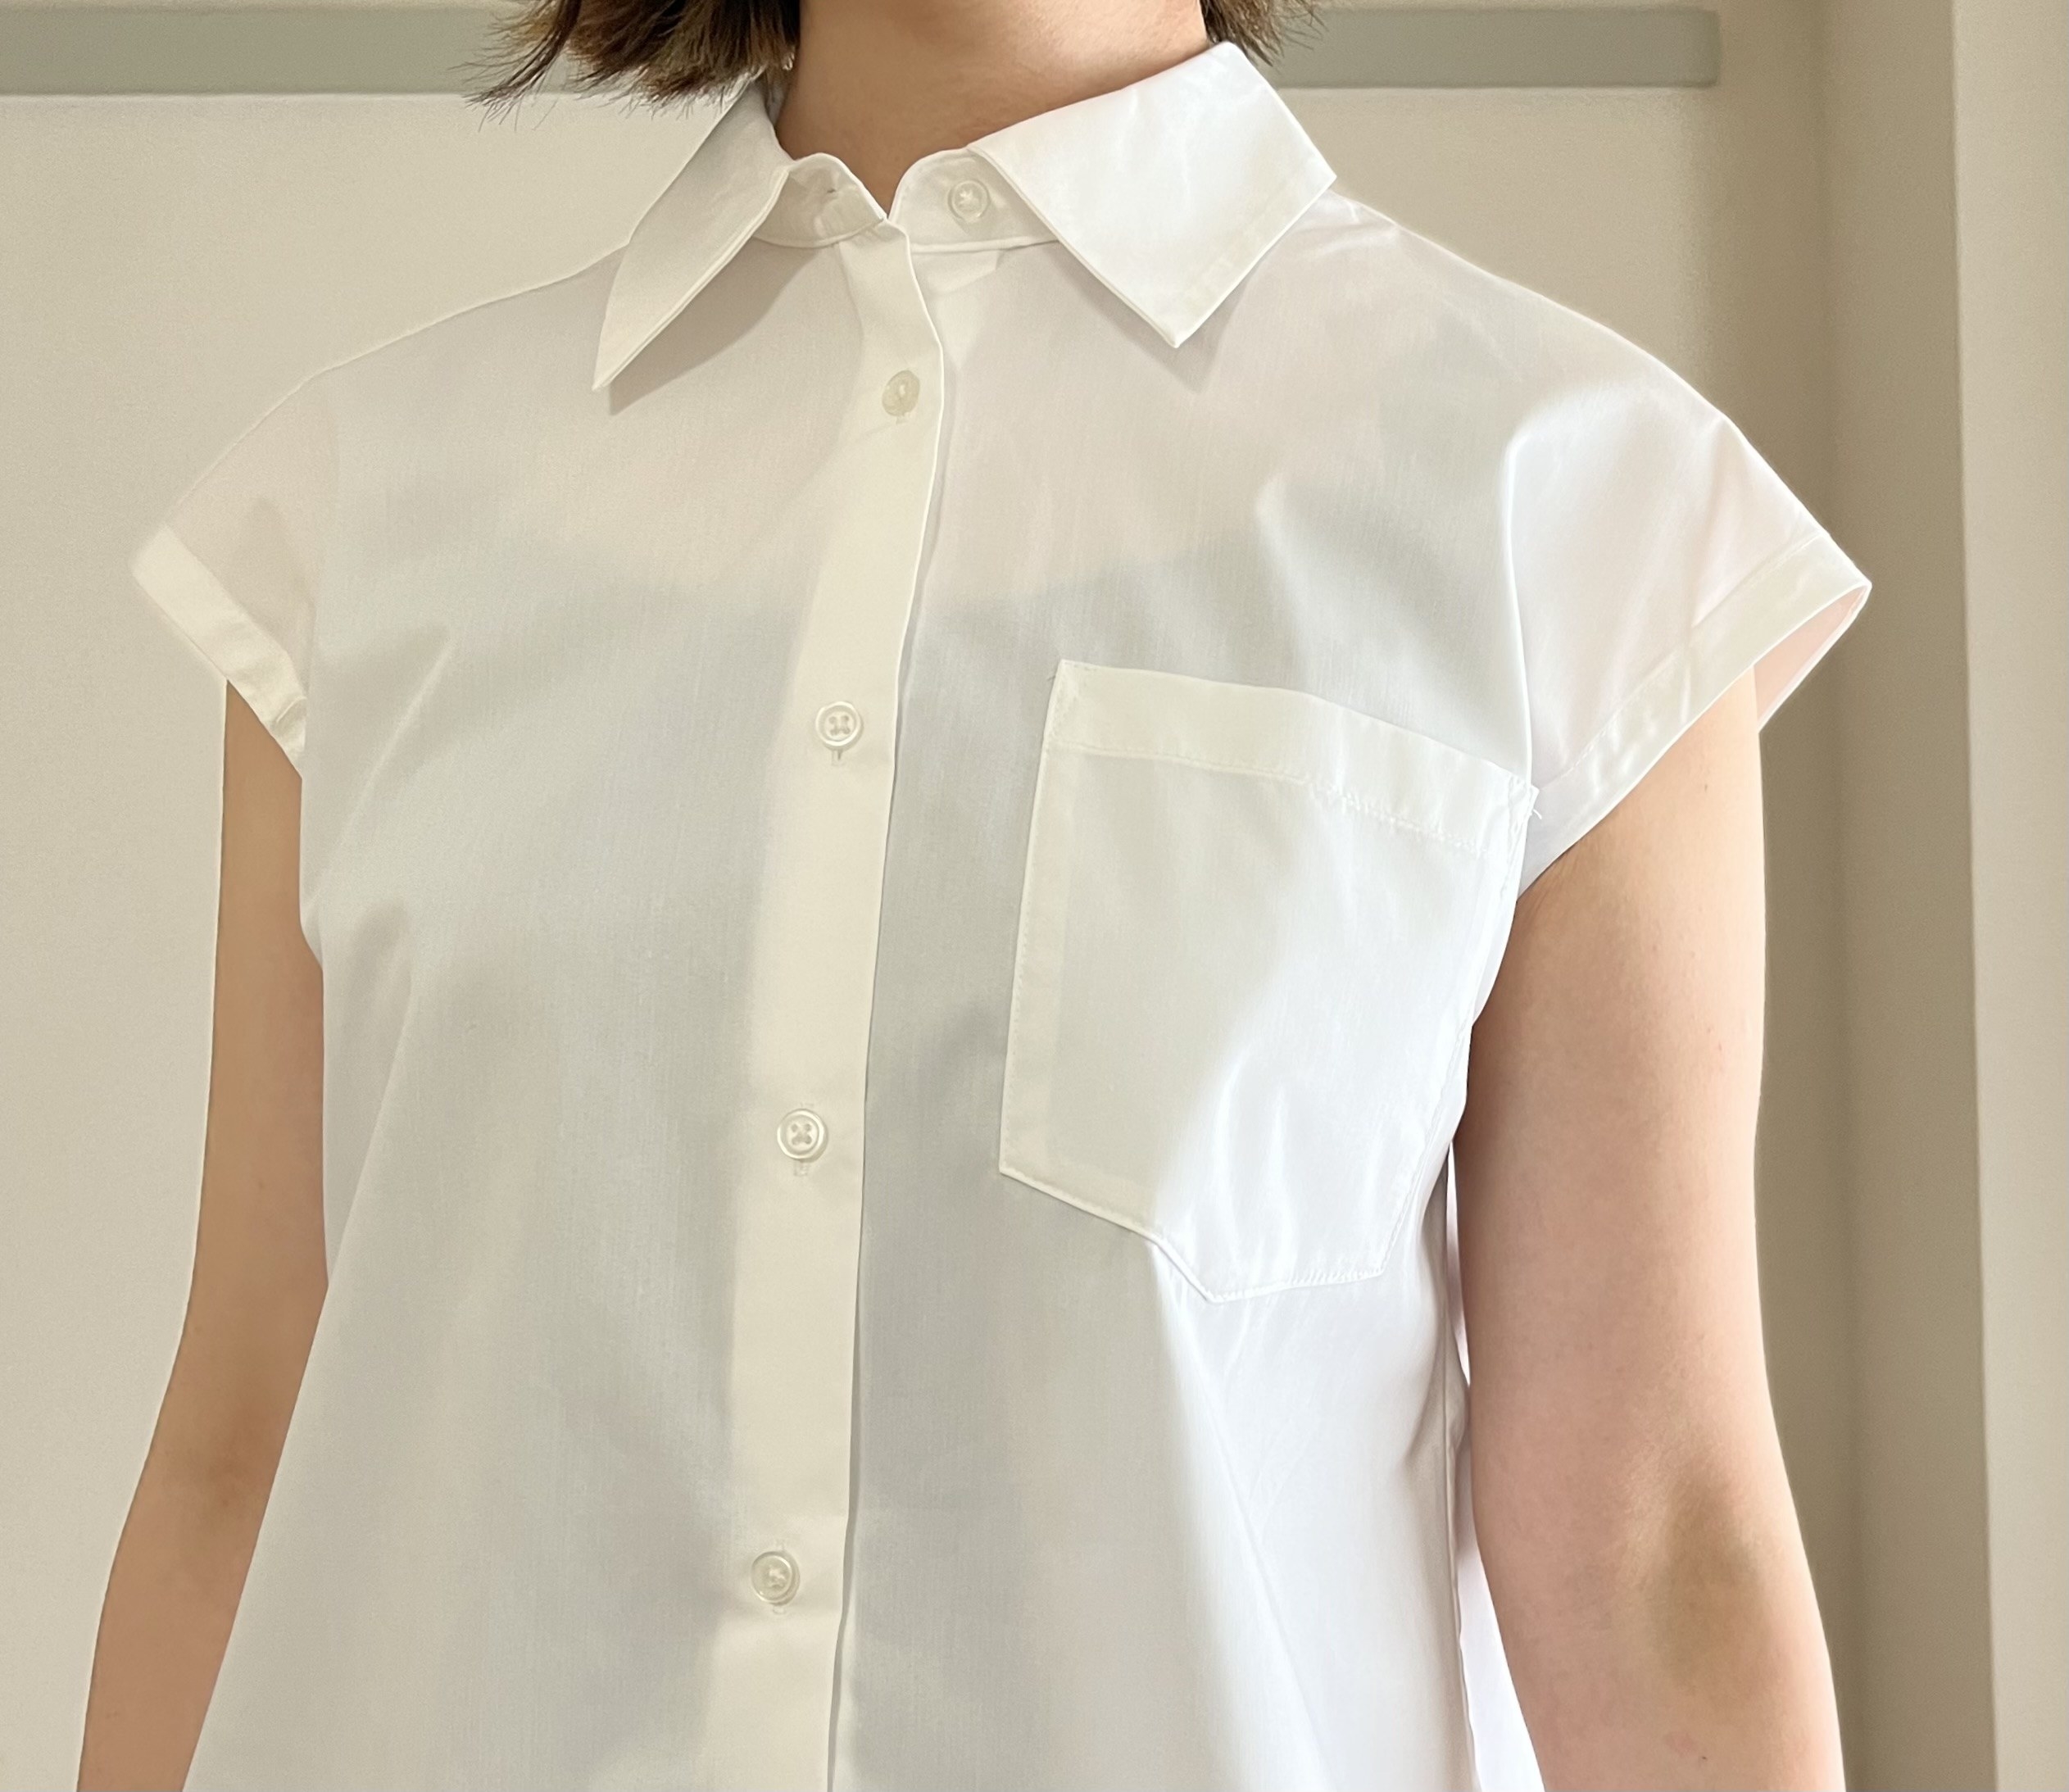 GU（ジーユー）のレディースアイテム「フレンチスリーブチュニックシャツ(半袖)RS+X」Aラインシルエットがキレイで細見え